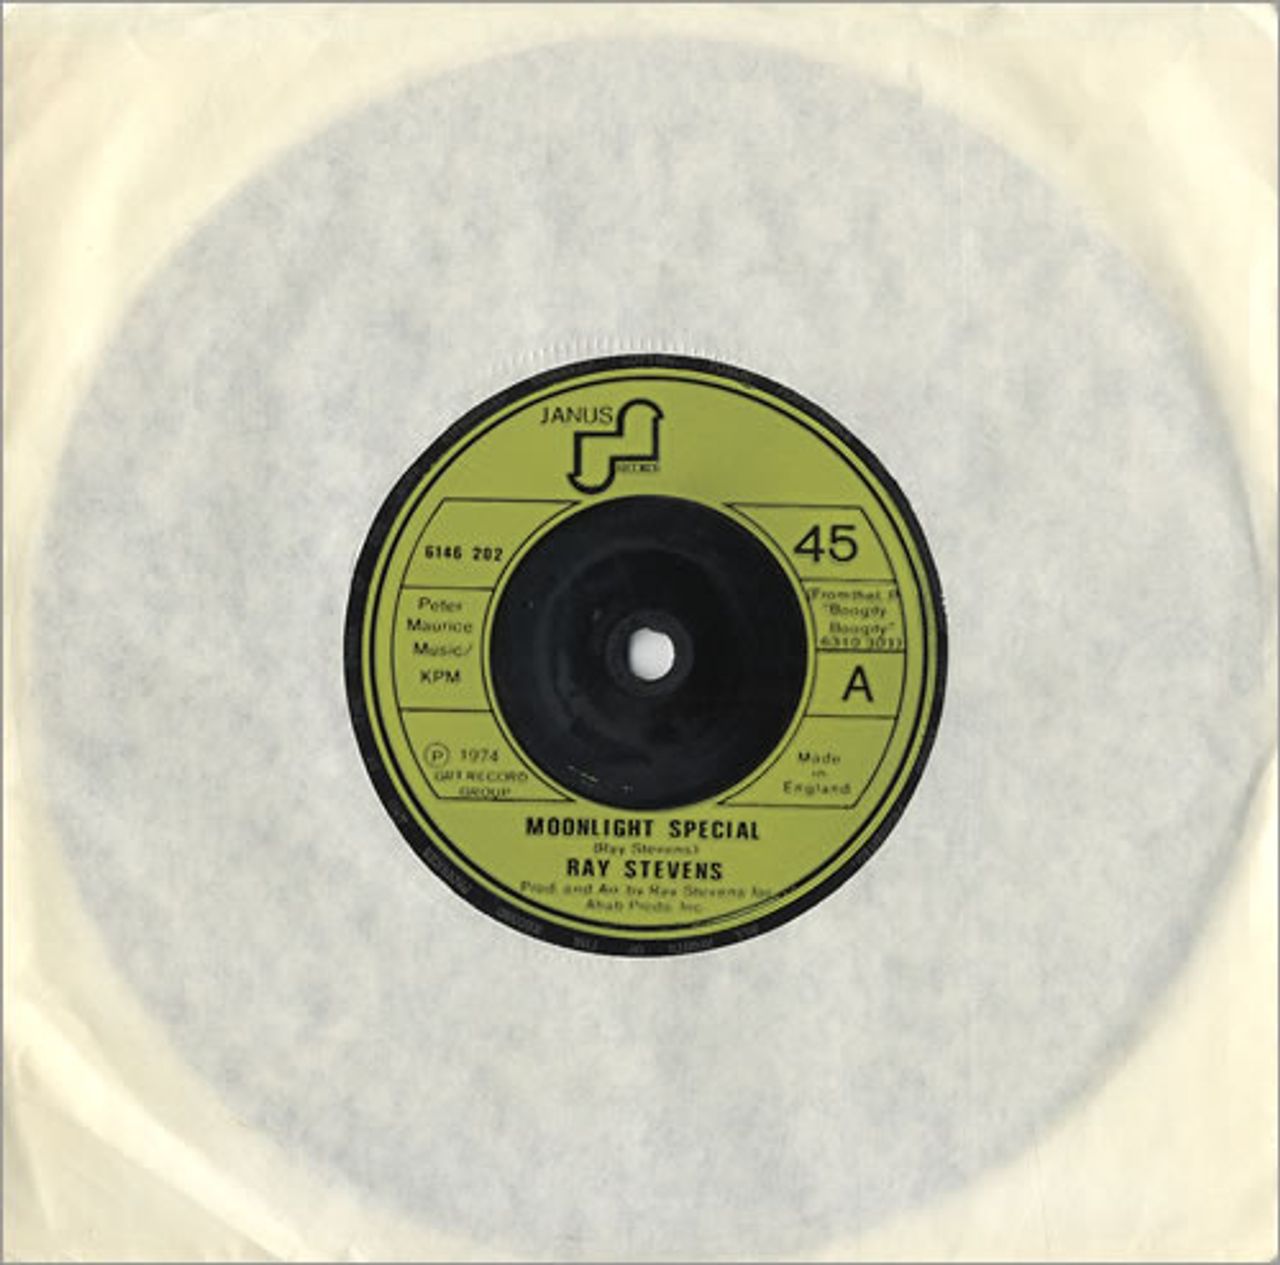 Ray Stevens Moonlight Special UK 7" vinyl single (7 inch record / 45) 6146002